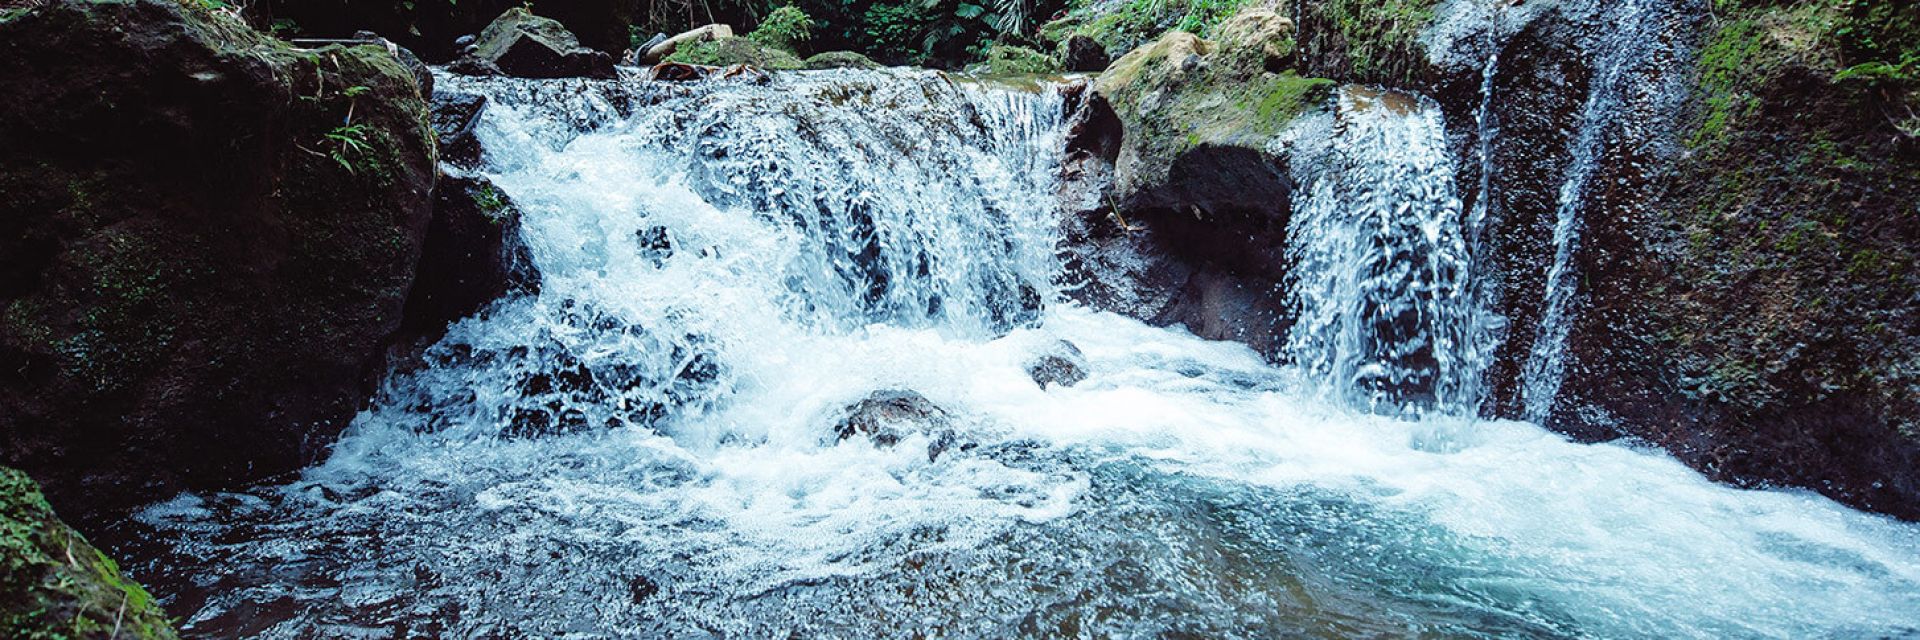 Descubra 6 incríveis cachoeiras em Goiás